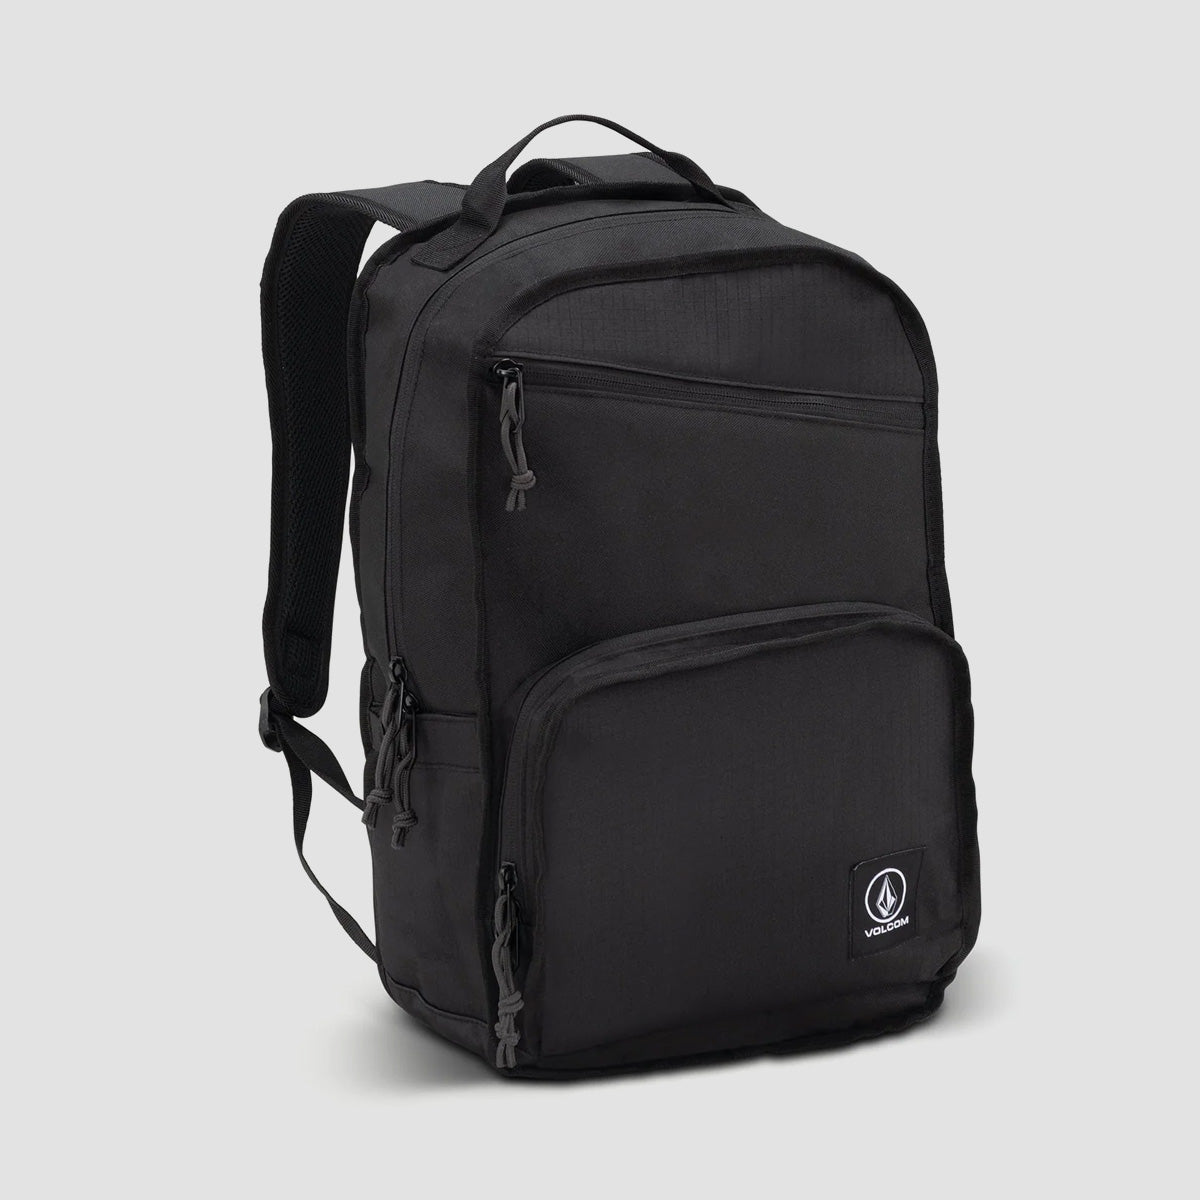 Volcom Hardbound 24L Backpack Black